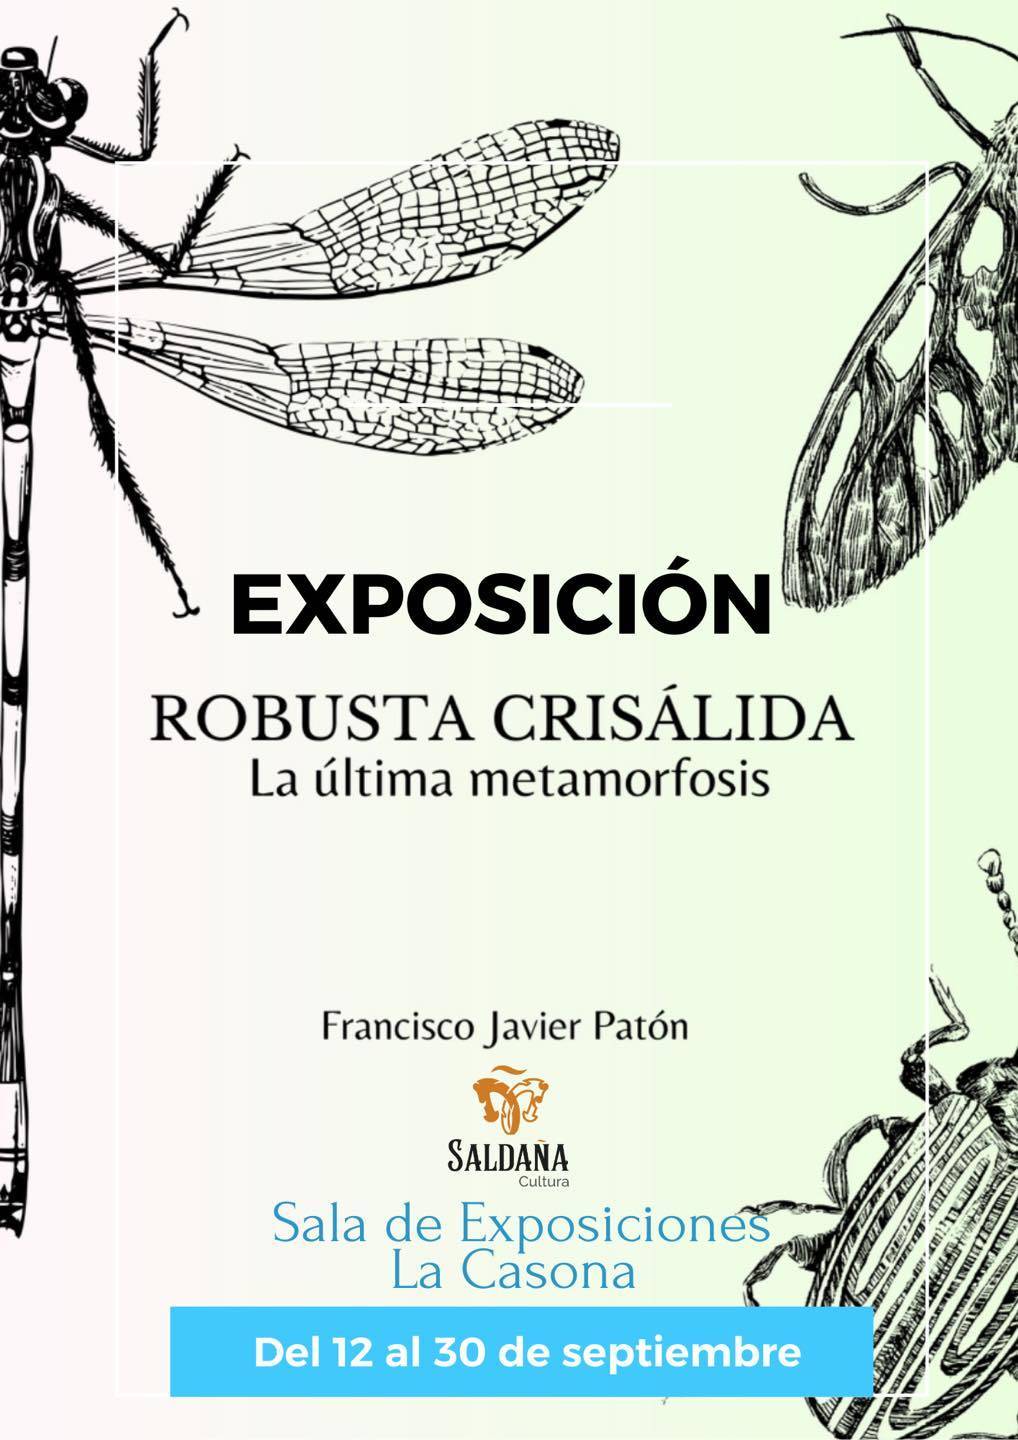 Exposición 'Robusta crisálida' (2023) - Saldaña (Palencia)